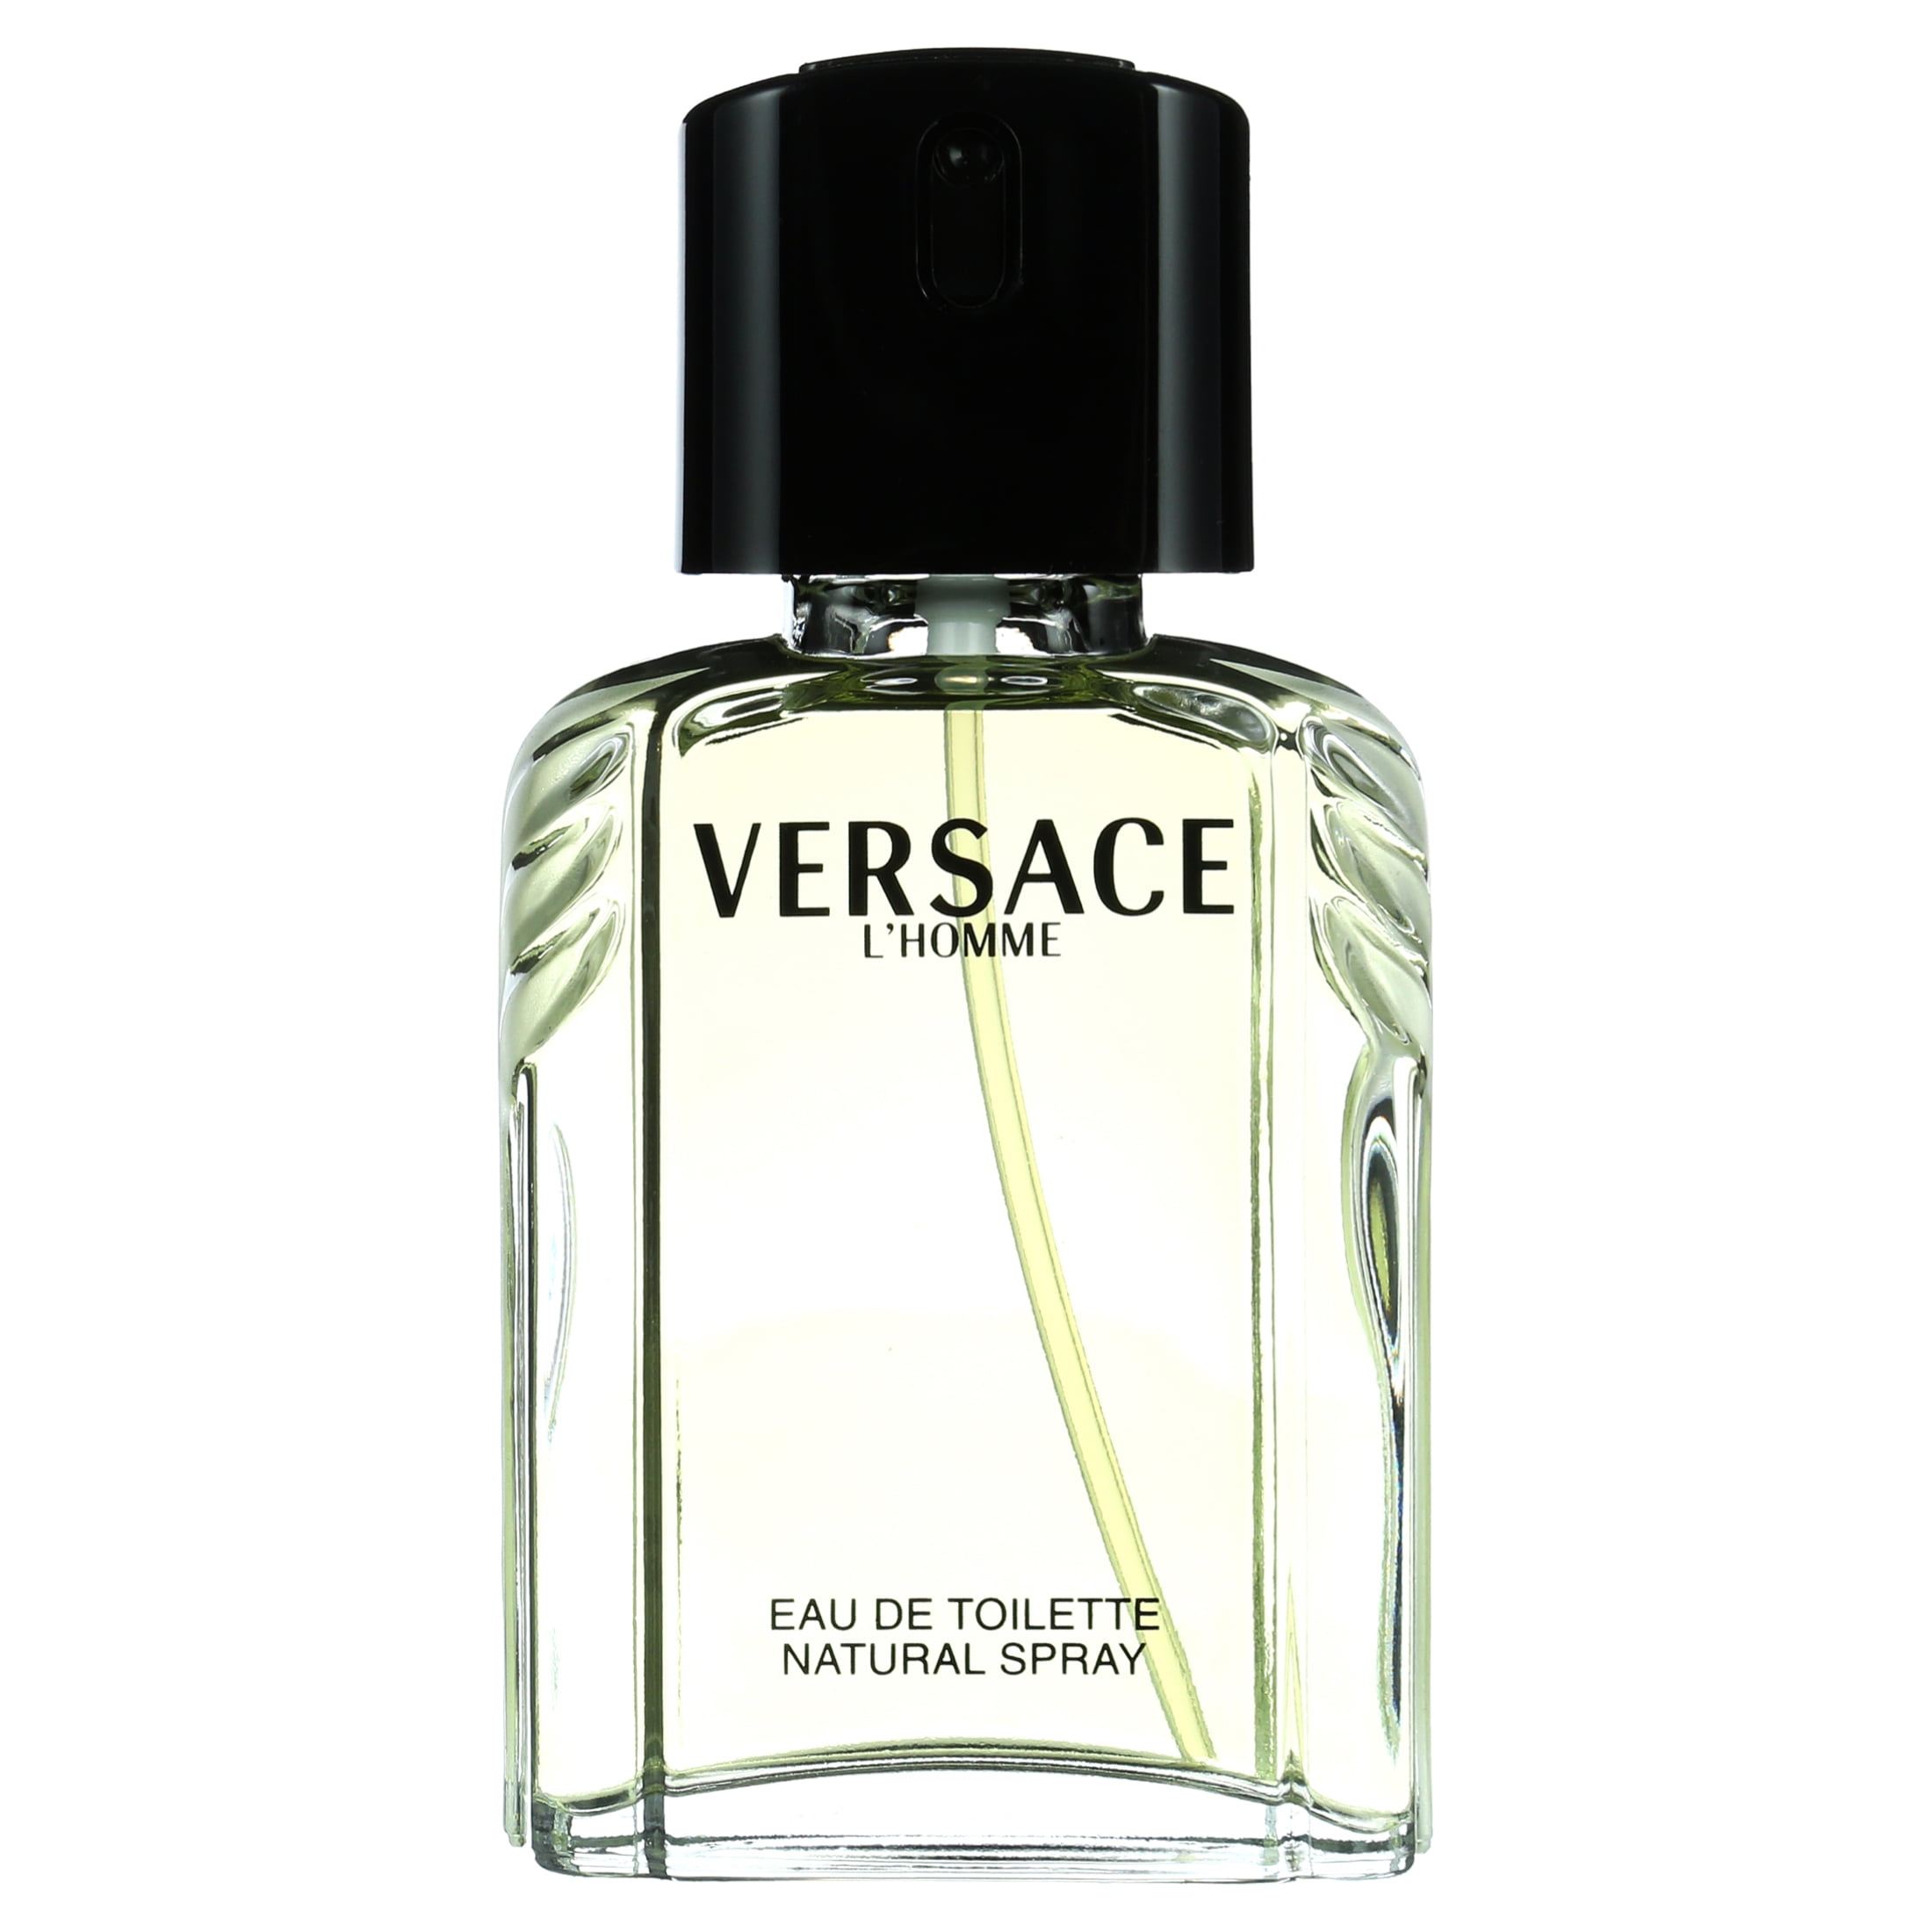 Versace Men's L'Homme Eau de Toilette Spray - 3.4 oz bottle